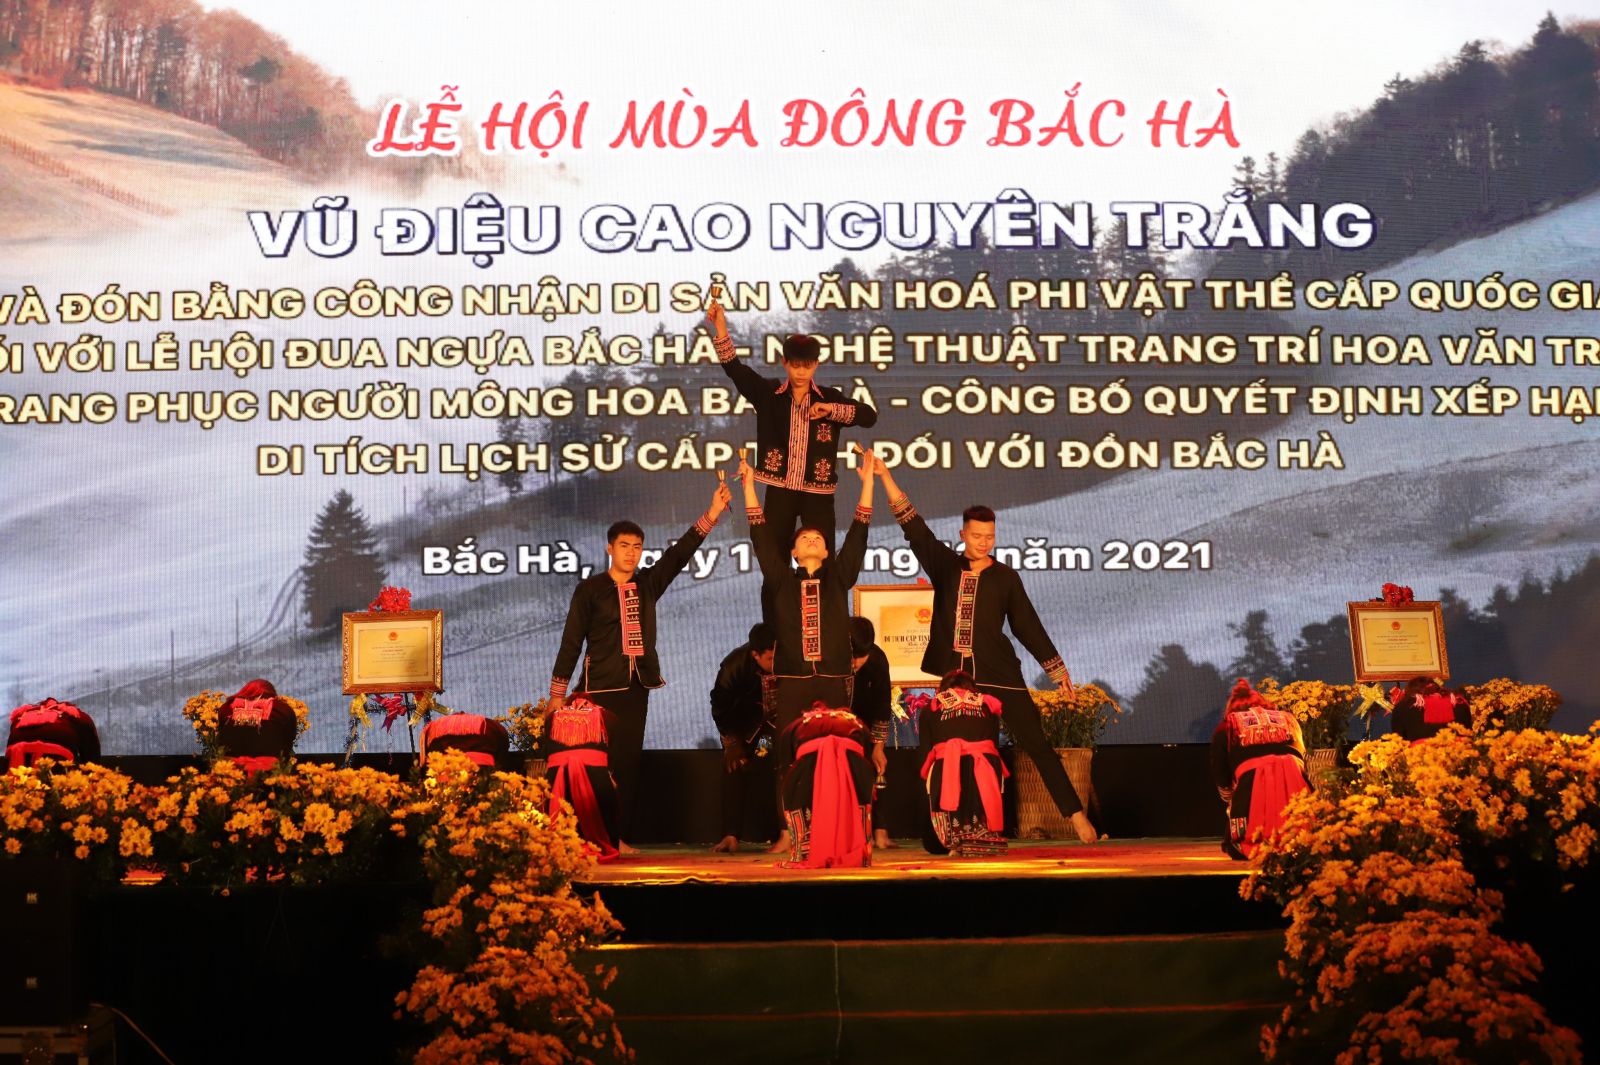 Vũ điệu cao nguyên trắng tại lễ hội mùa đông Bắc Hà, Lào Cai